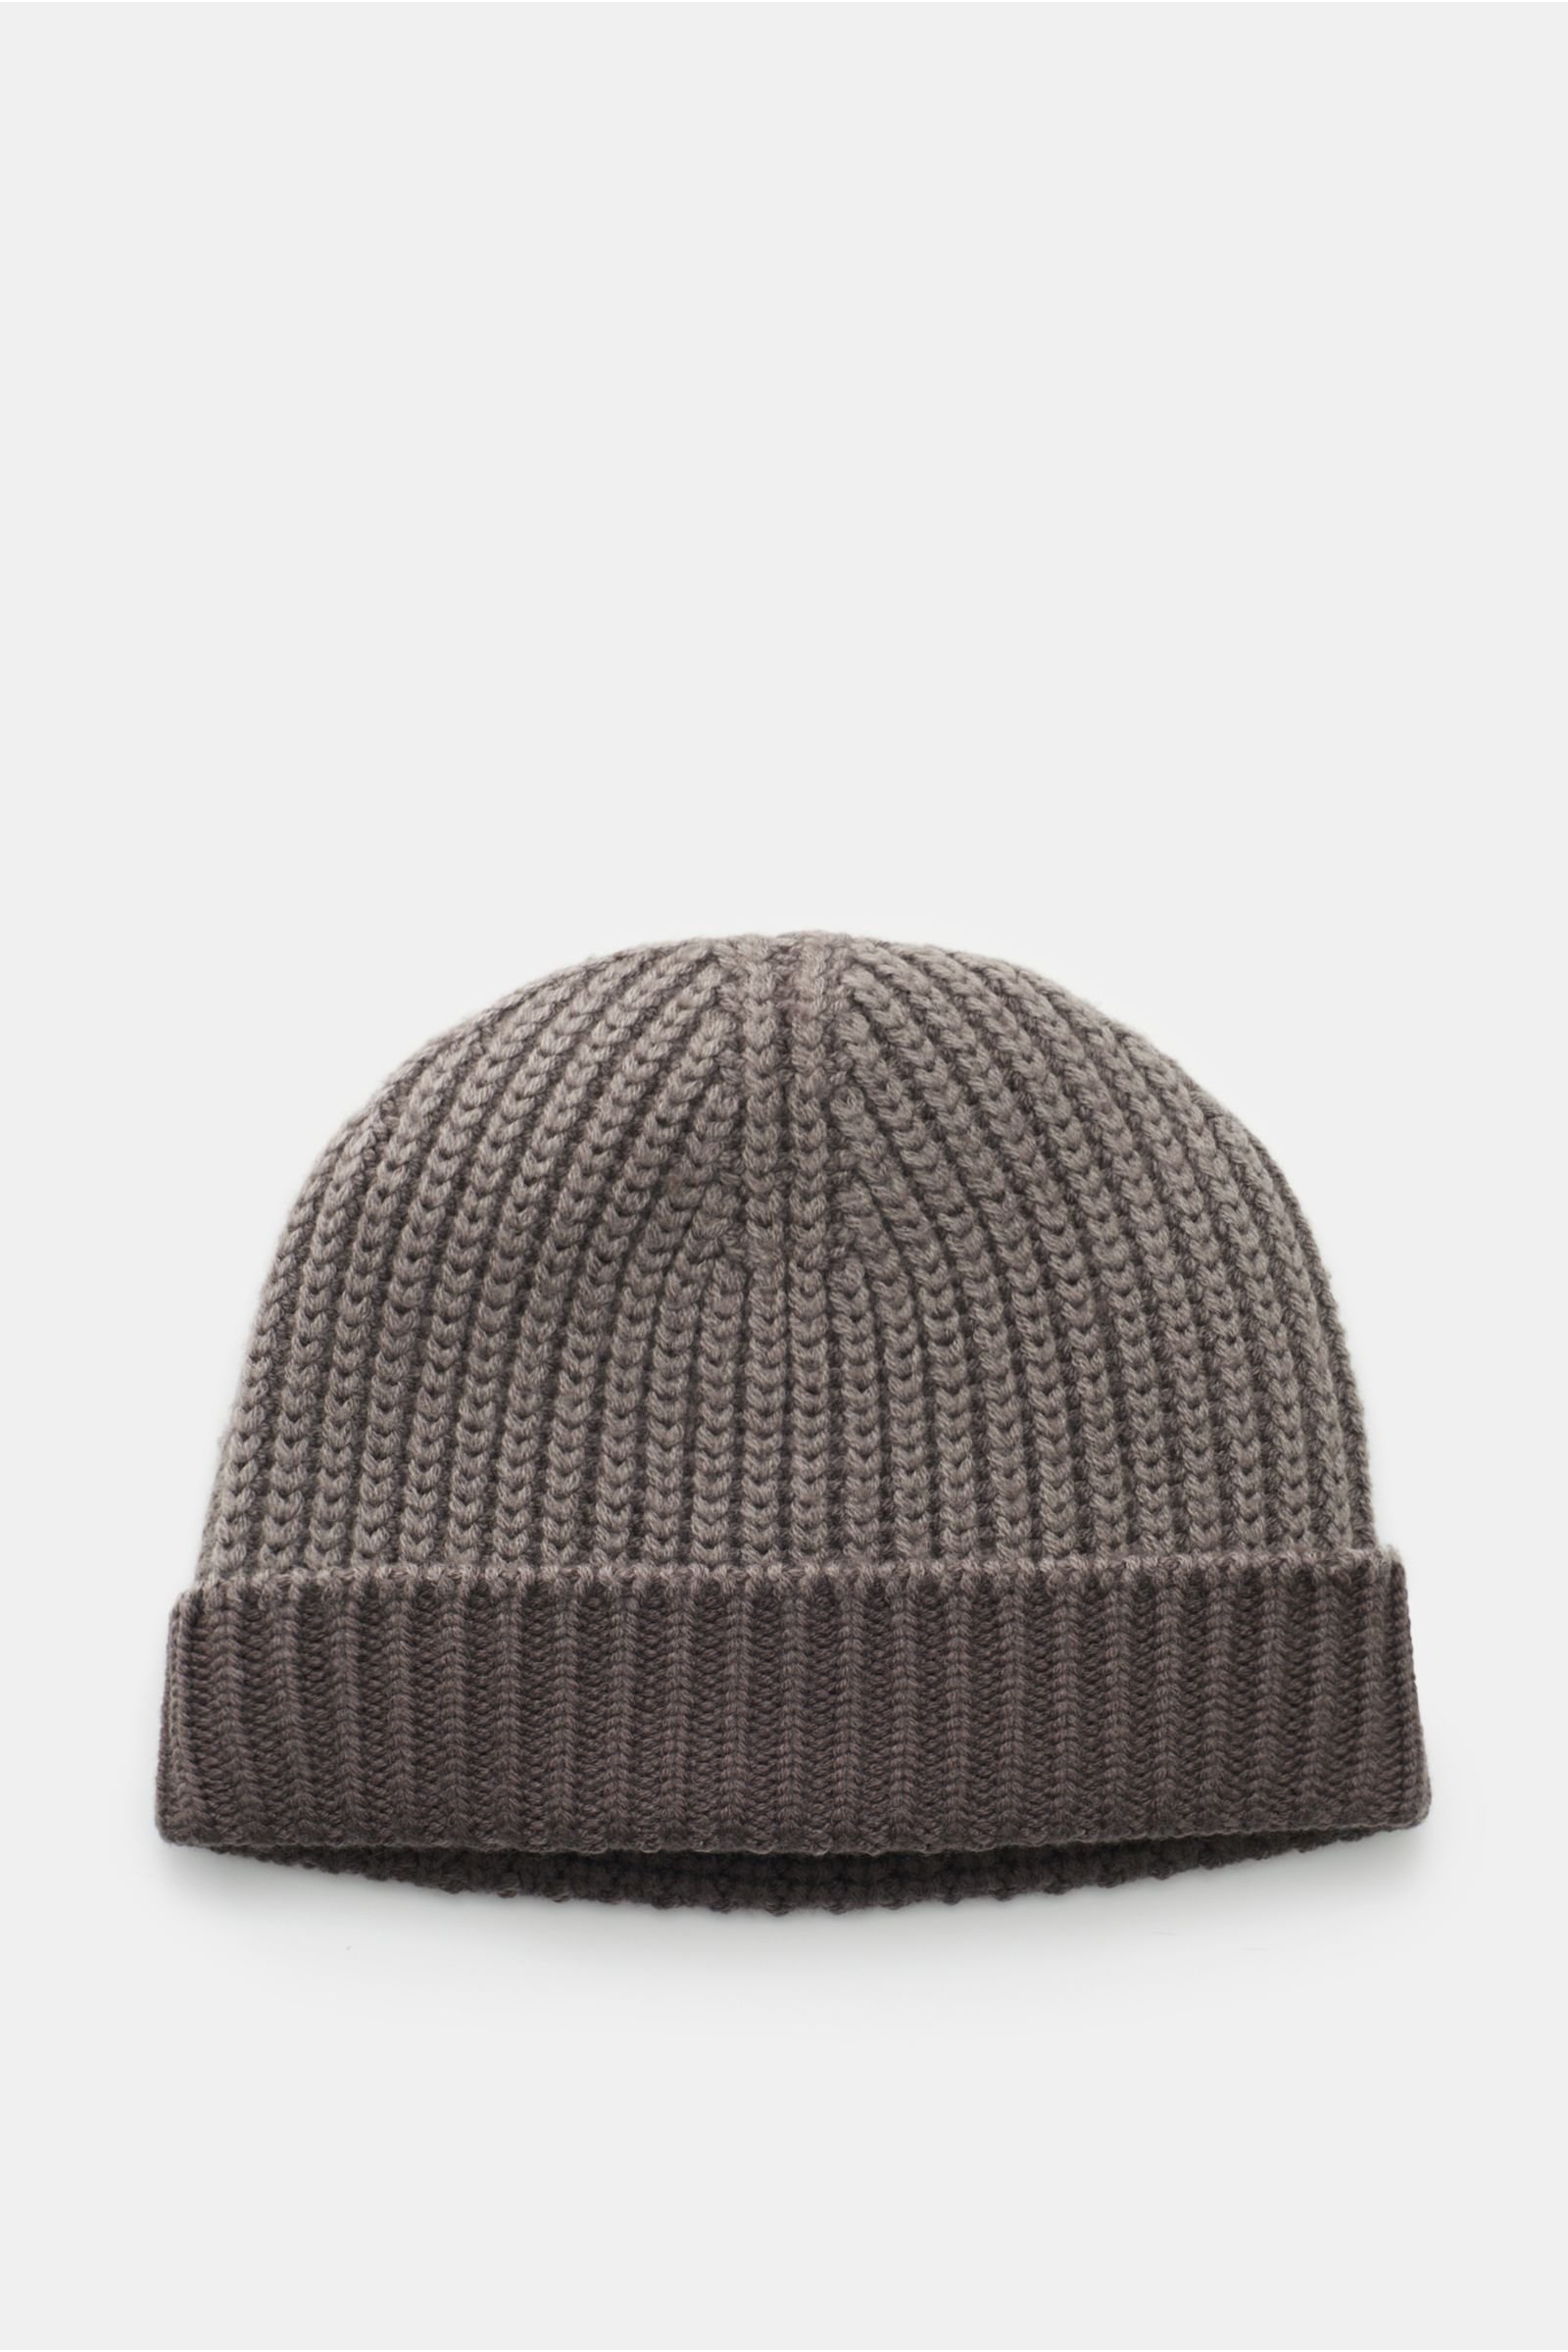 Wende-Wollmütze 'Foggy Hat' graubraun